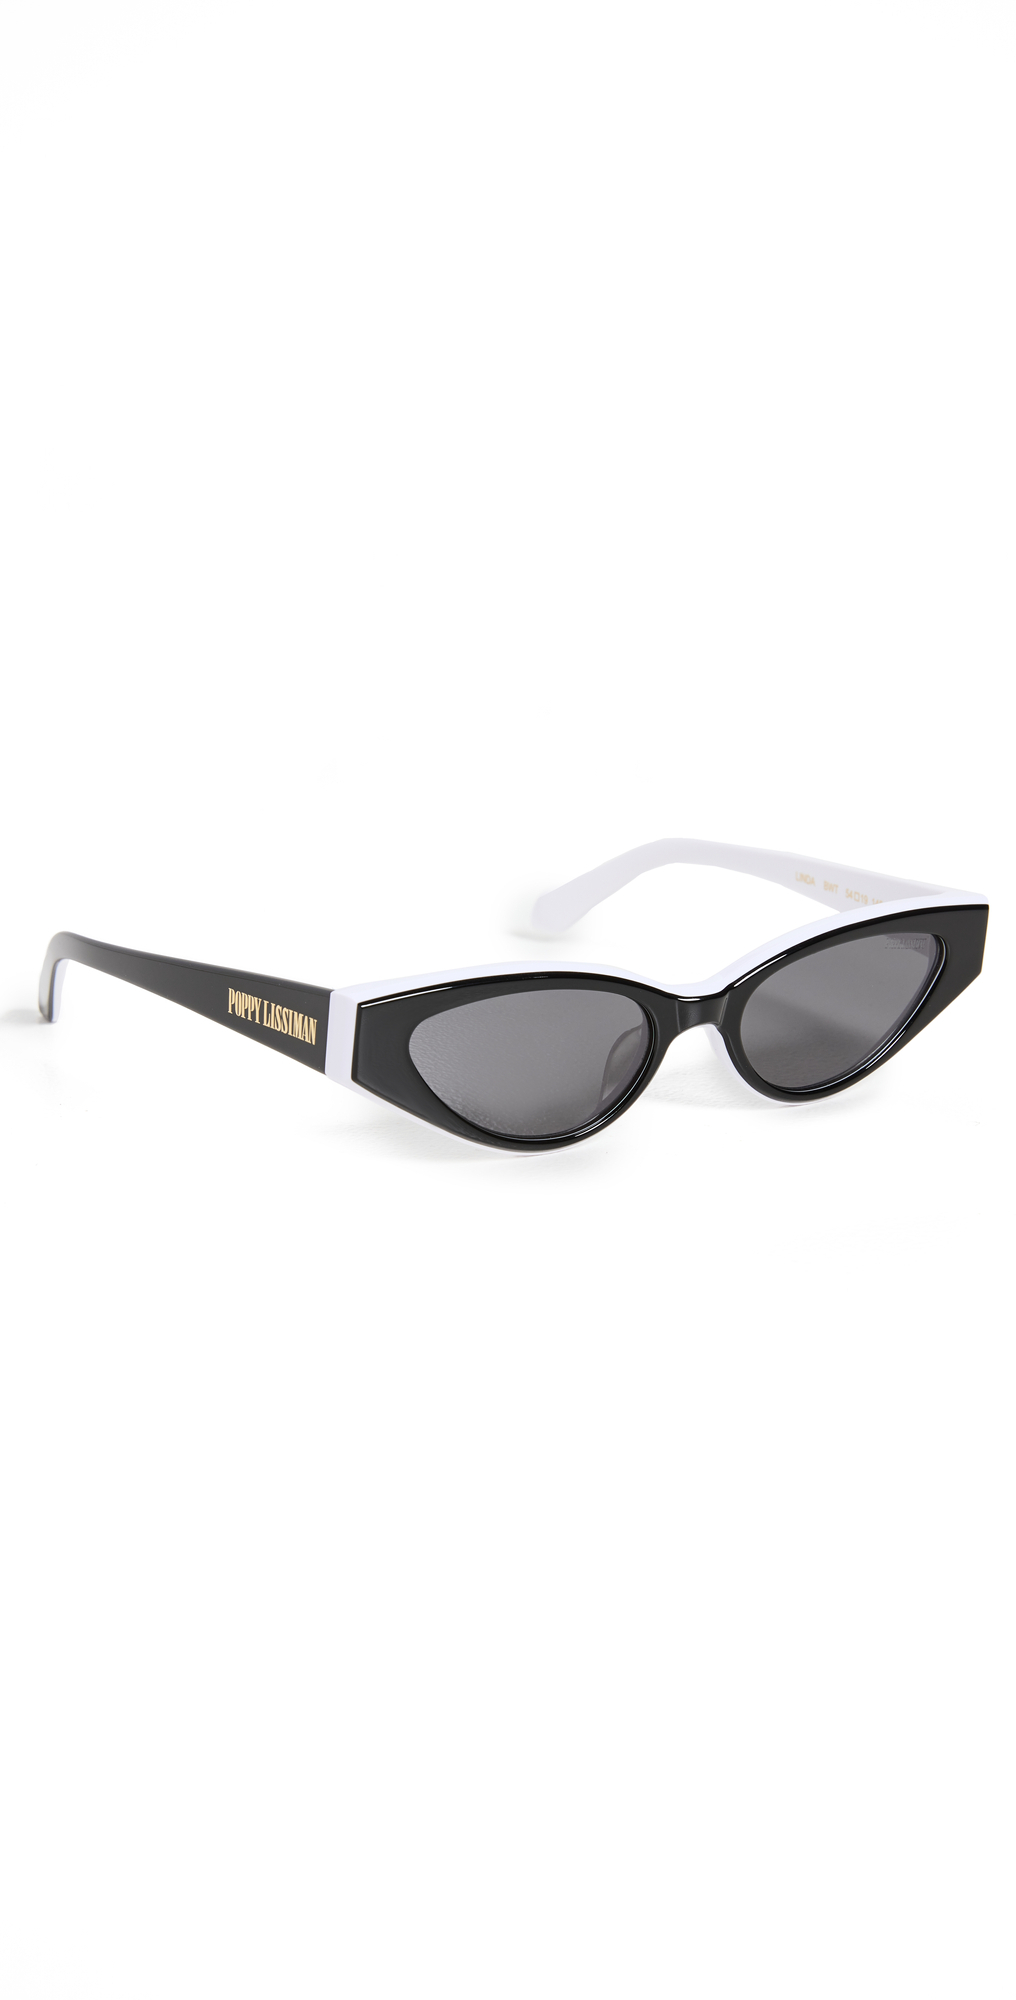 Poppy Lissiman Linda Sunglasses in black / white